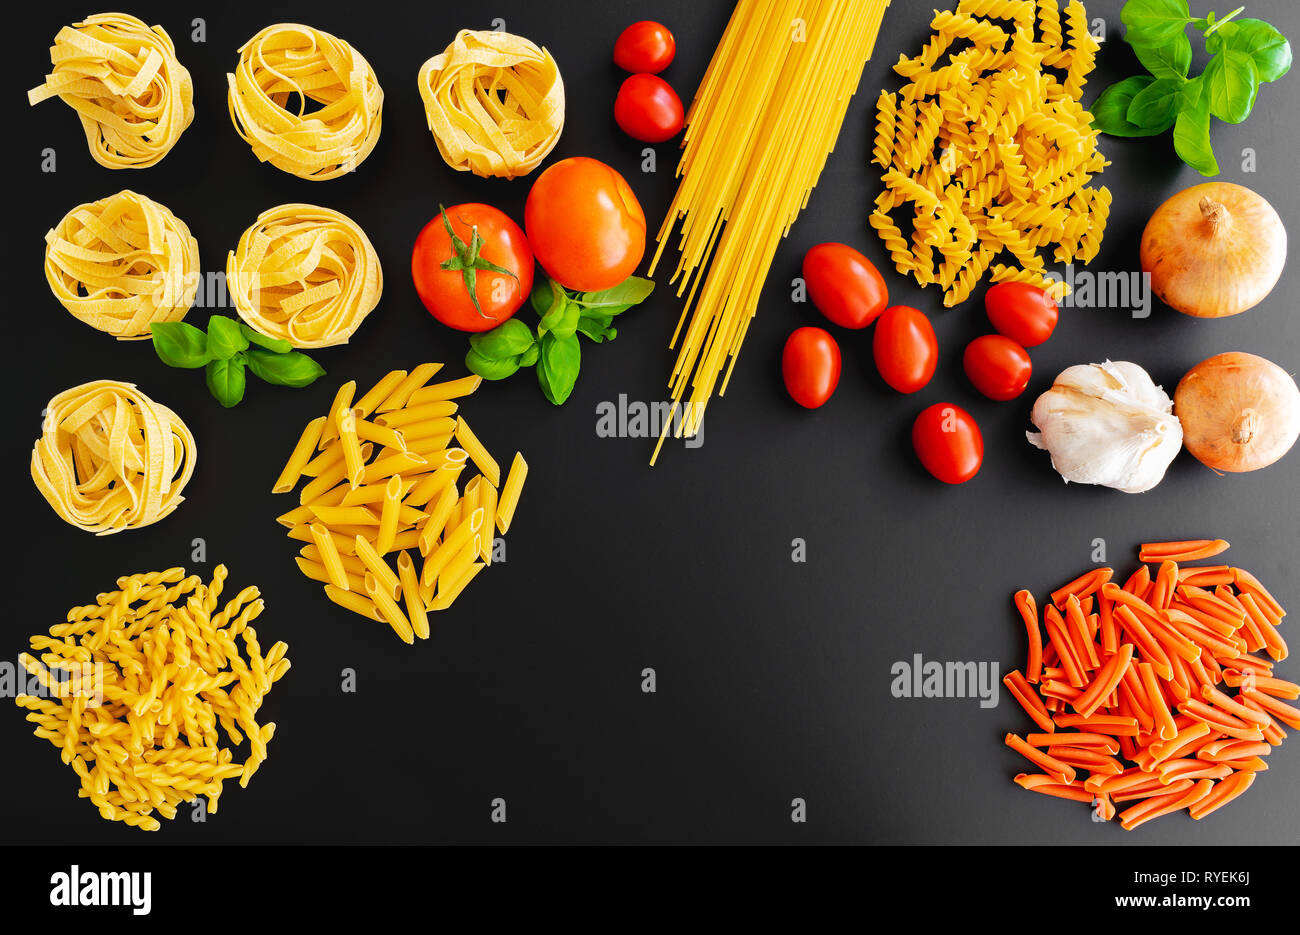 Non cotte diversi piatti di pasta italiana tagliatelle su sfondo scuro con foglie di basilico fresco, pomodori e cipolle Foto Stock